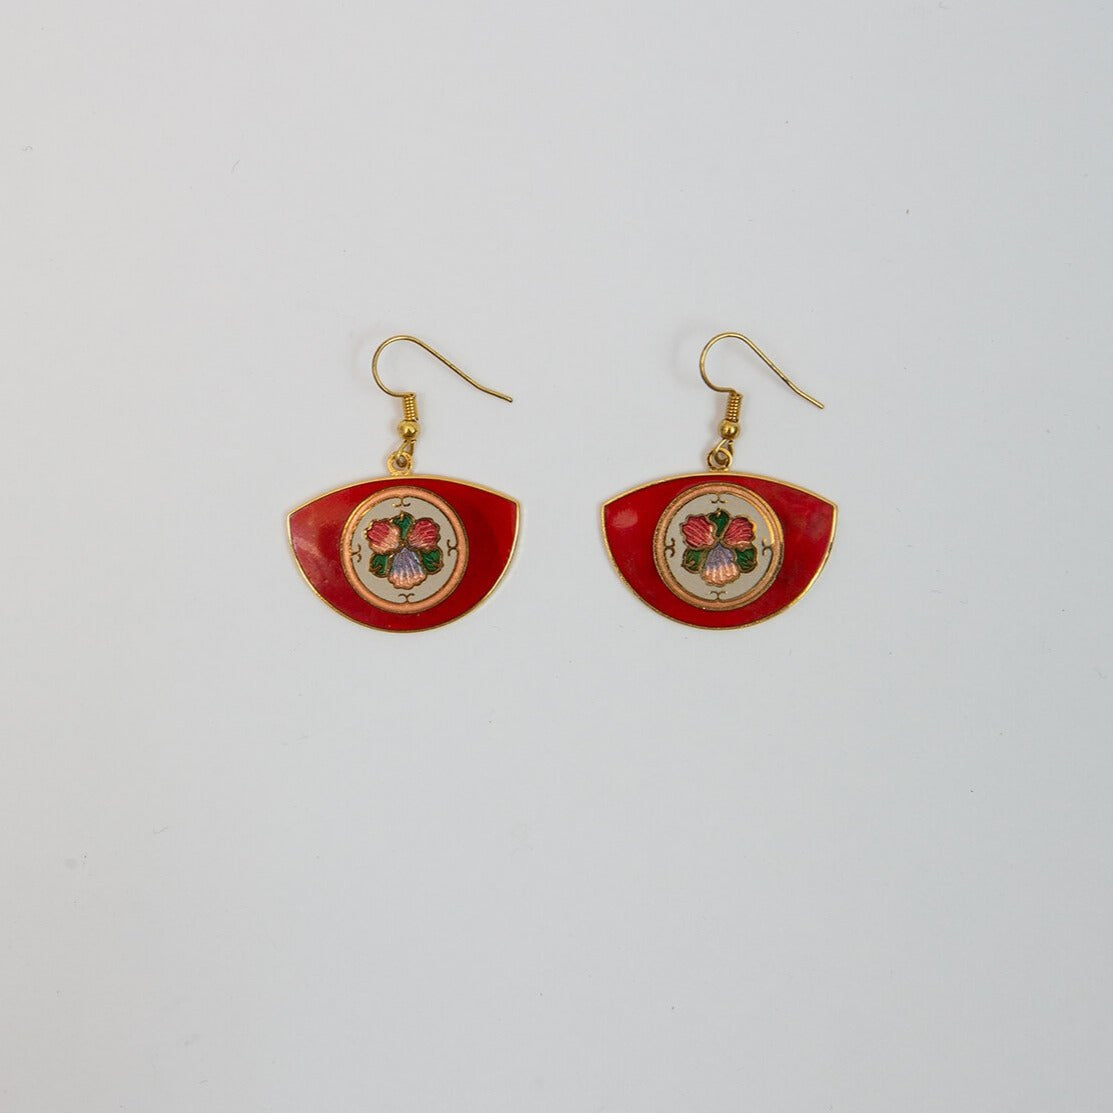 Cloisonné Fan Earrings in red colorway